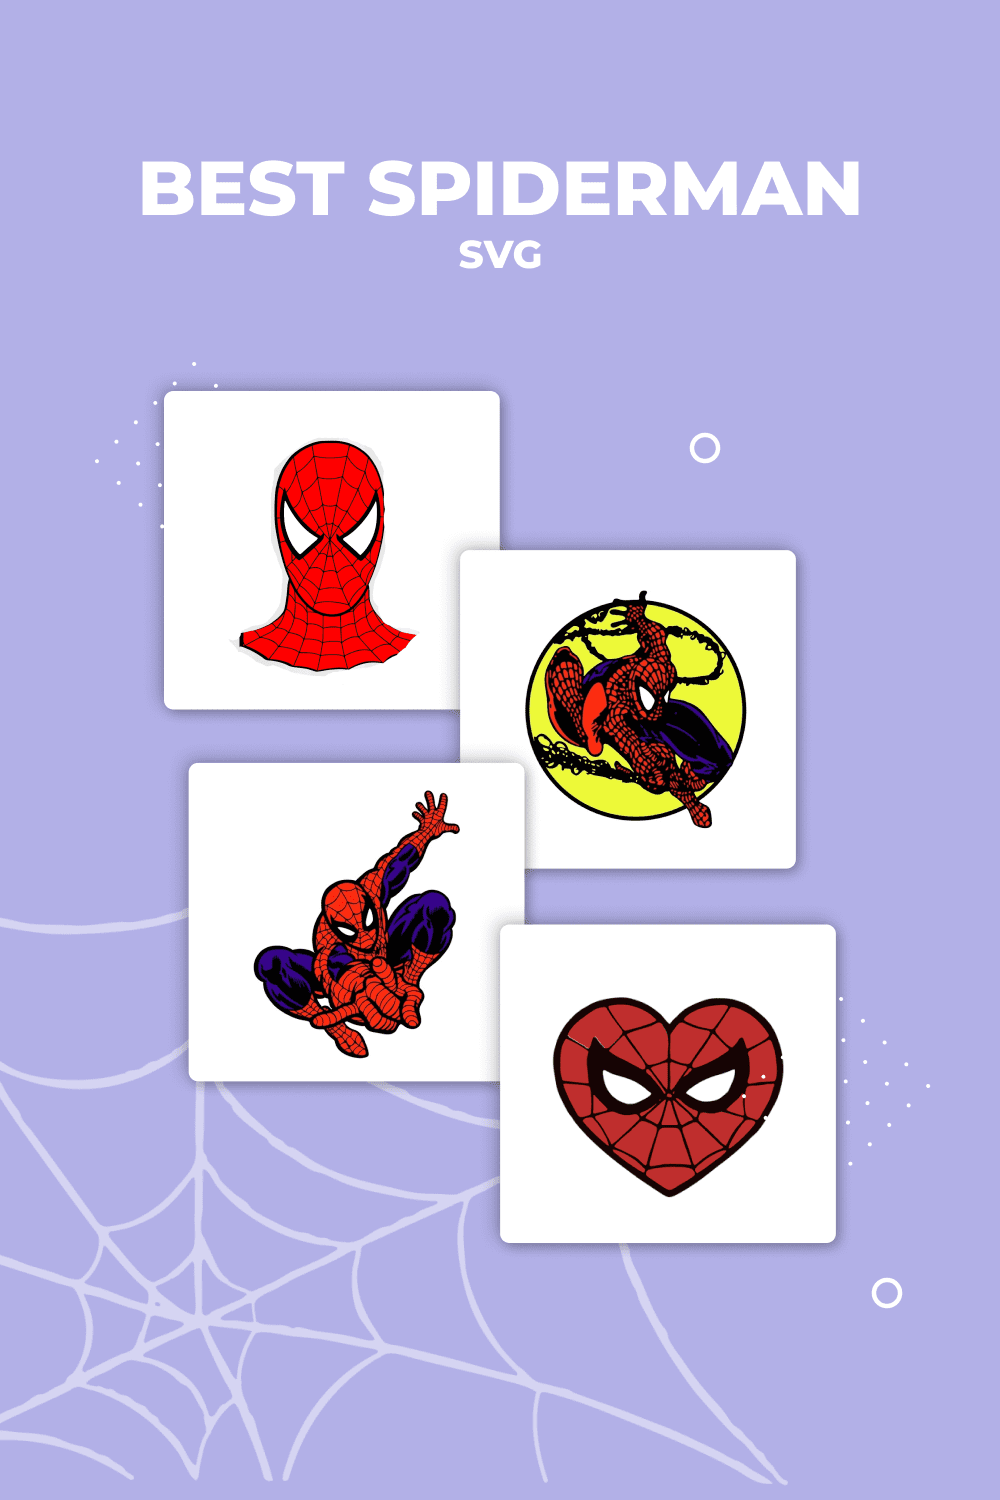 Spiderman sticker set on a purple background.